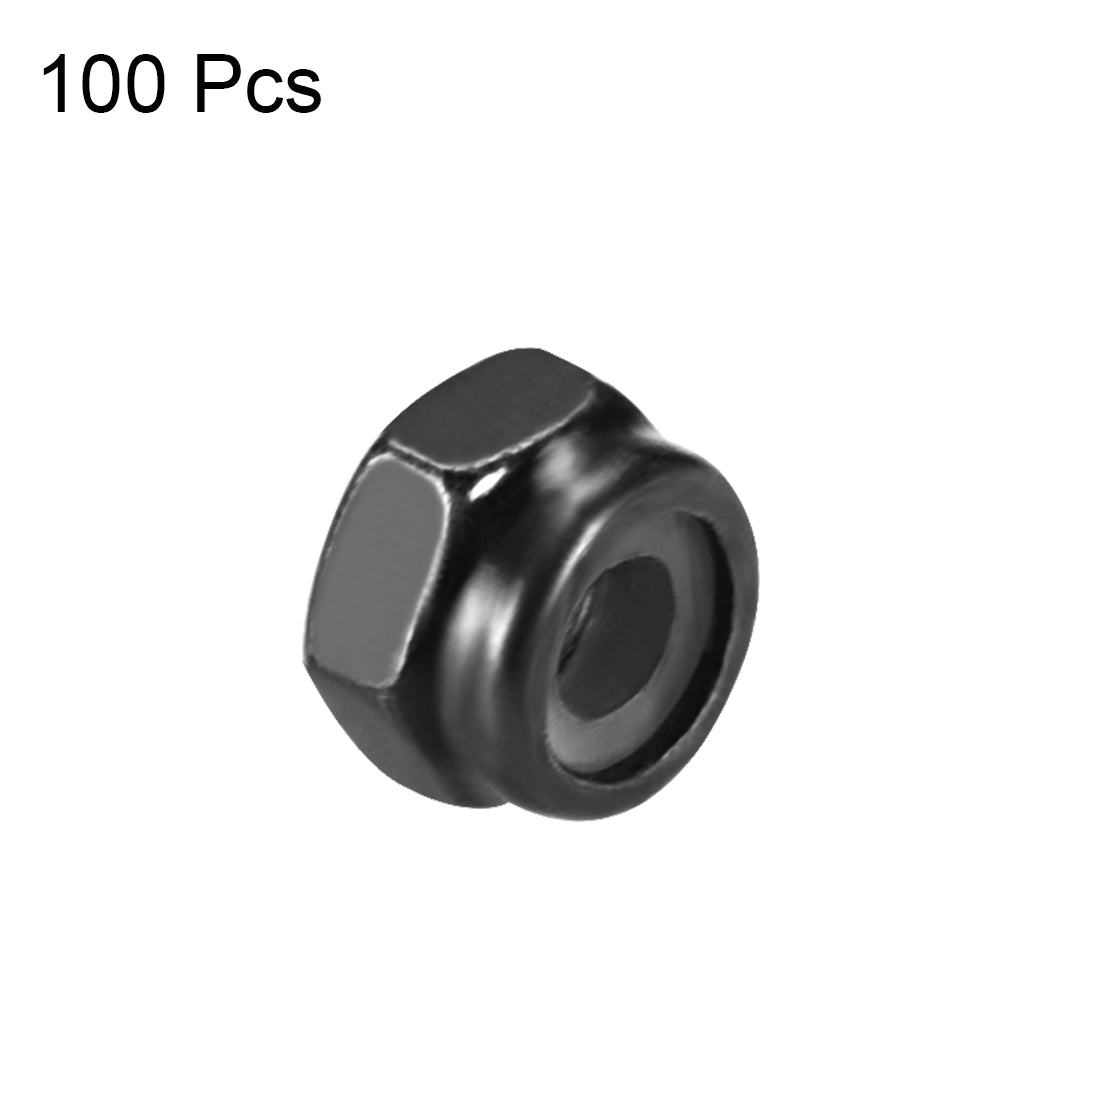 uxcell Uxcell M2x0.4mm Hex Lock Nuts Carbon Steel Nylon Insert Self-Lock Nuts, 100Pcs Black